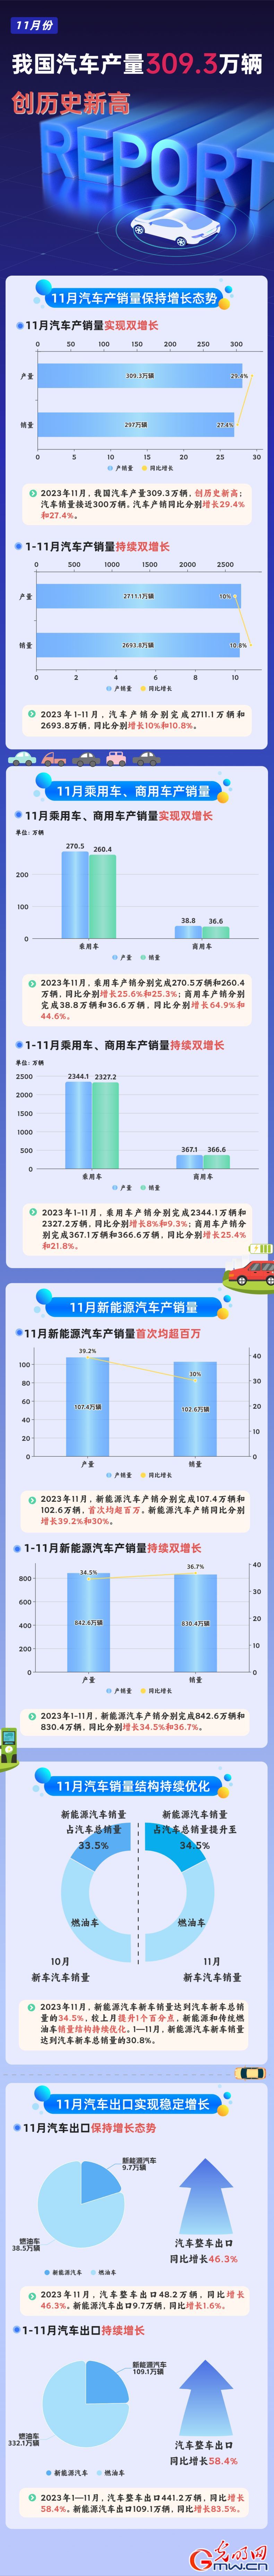 数据图解丨11月我国汽车产销量实现双增长